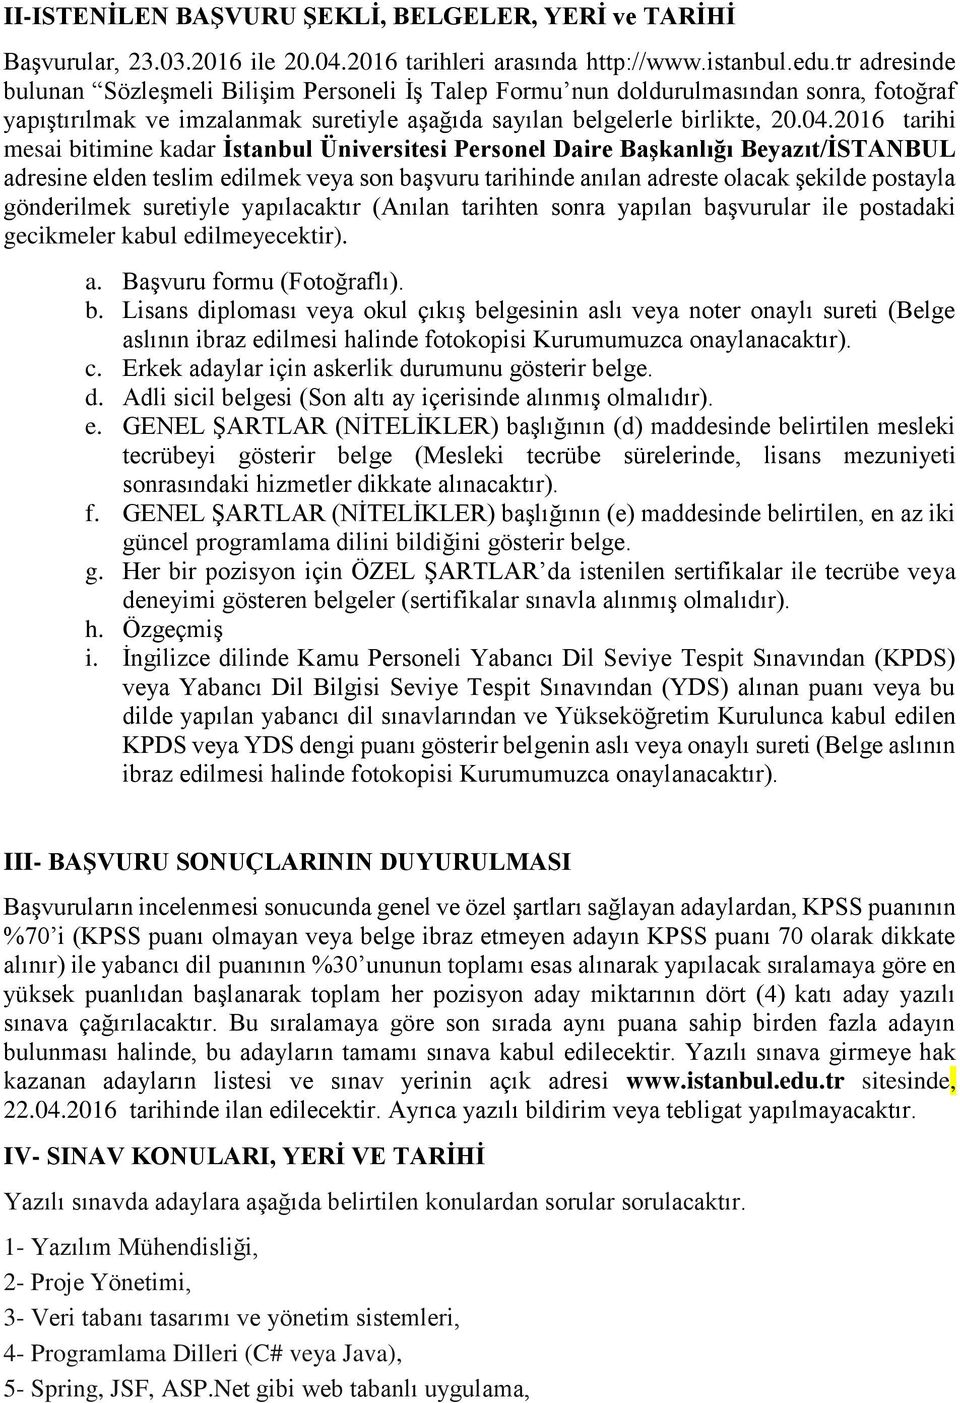 2016 tarihi mesai bitimine kadar İstanbul Üniversitesi Personel Daire Başkanlığı Beyazıt/İSTANBUL adresine elden teslim edilmek veya son başvuru tarihinde anılan adreste olacak şekilde postayla